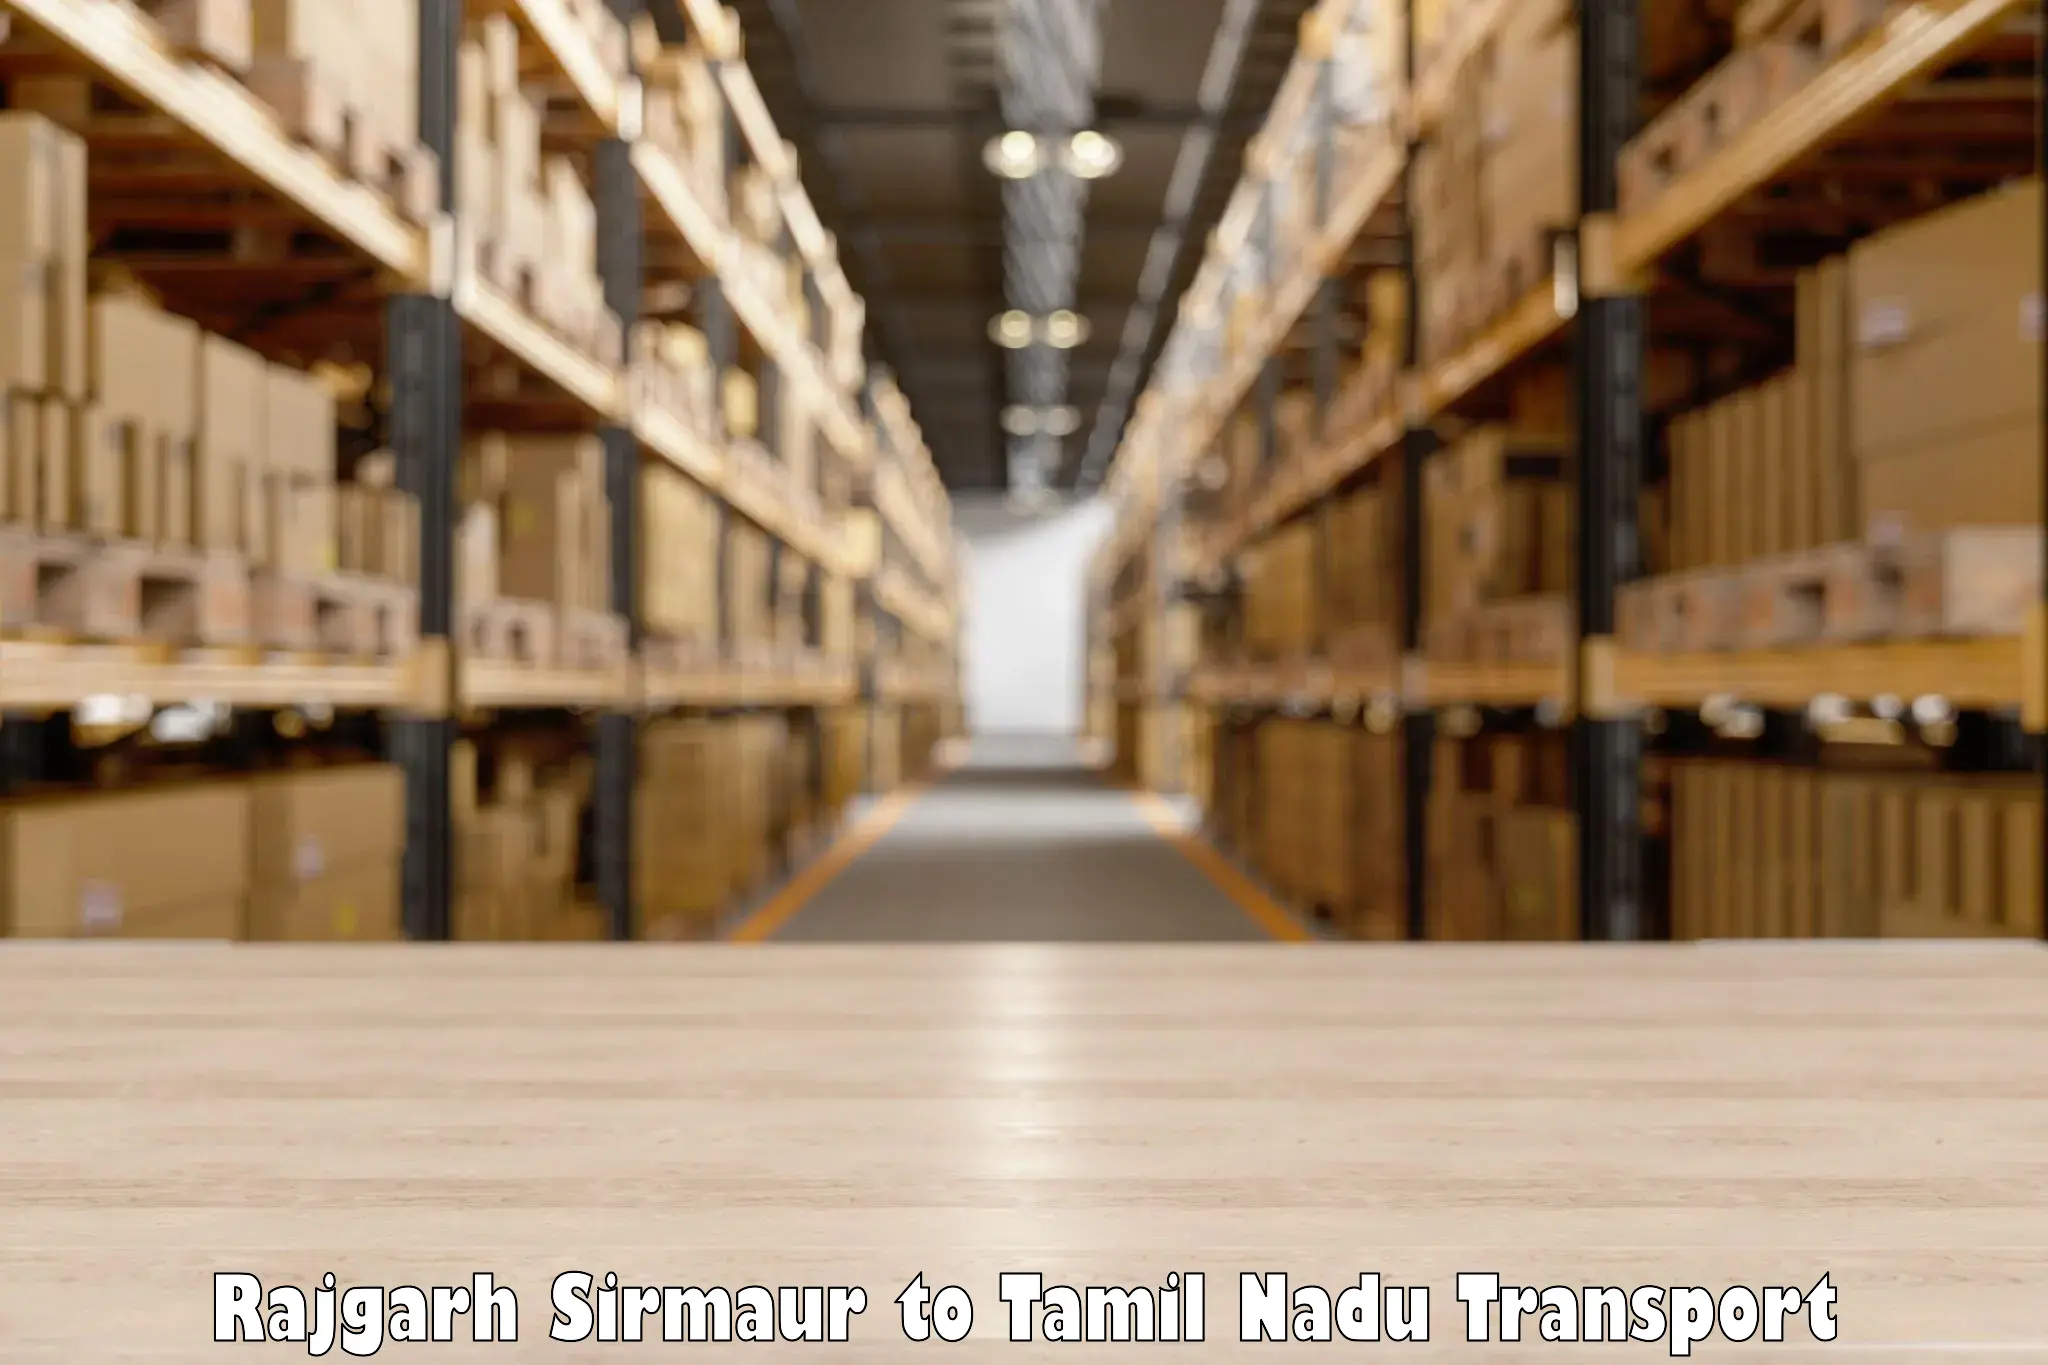 Bike shifting service Rajgarh Sirmaur to Tamil Nadu